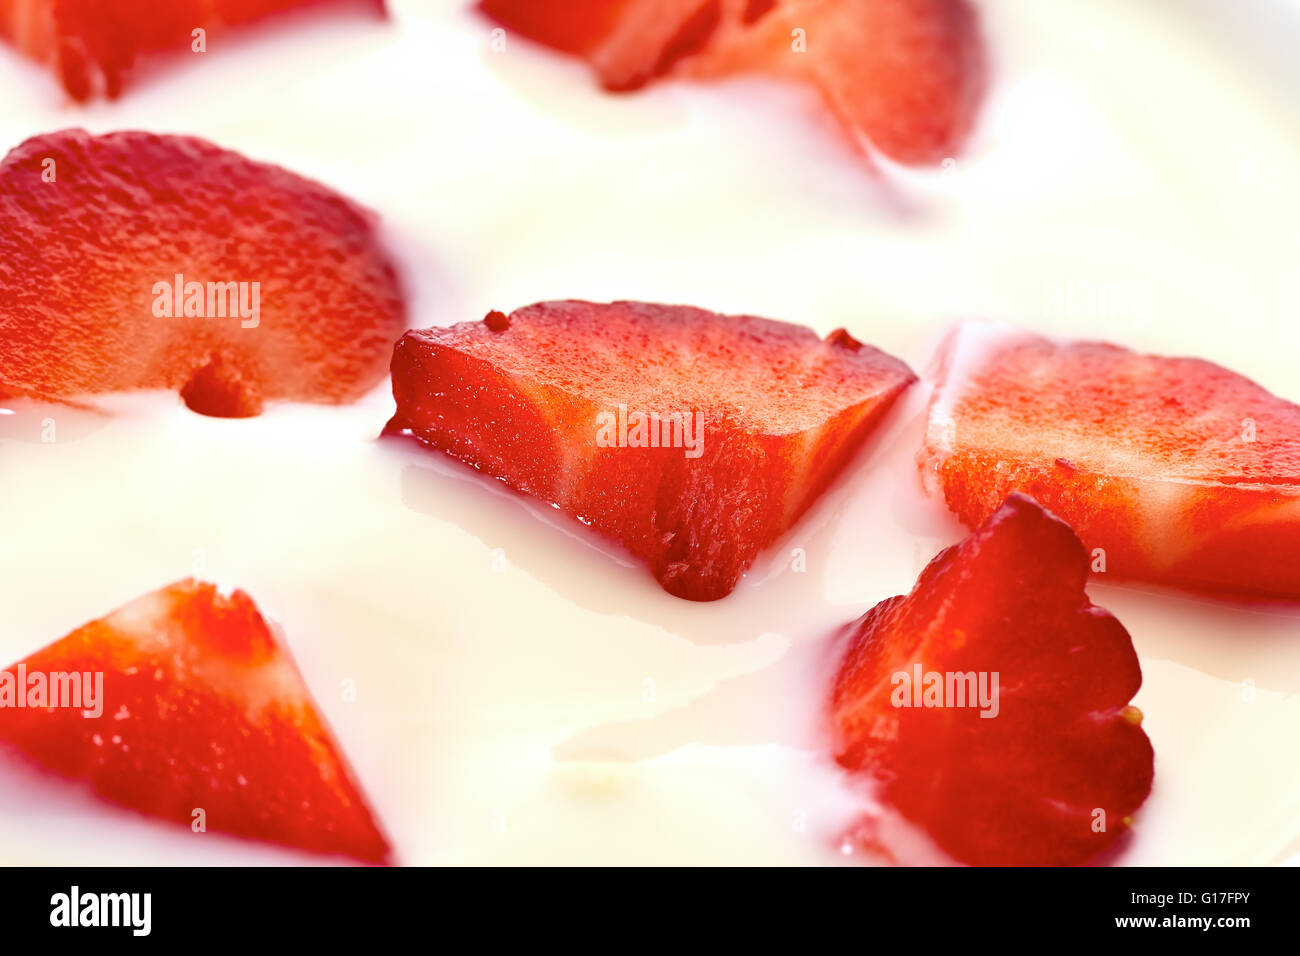 Sliced strawberries in yogurt Stock Photo